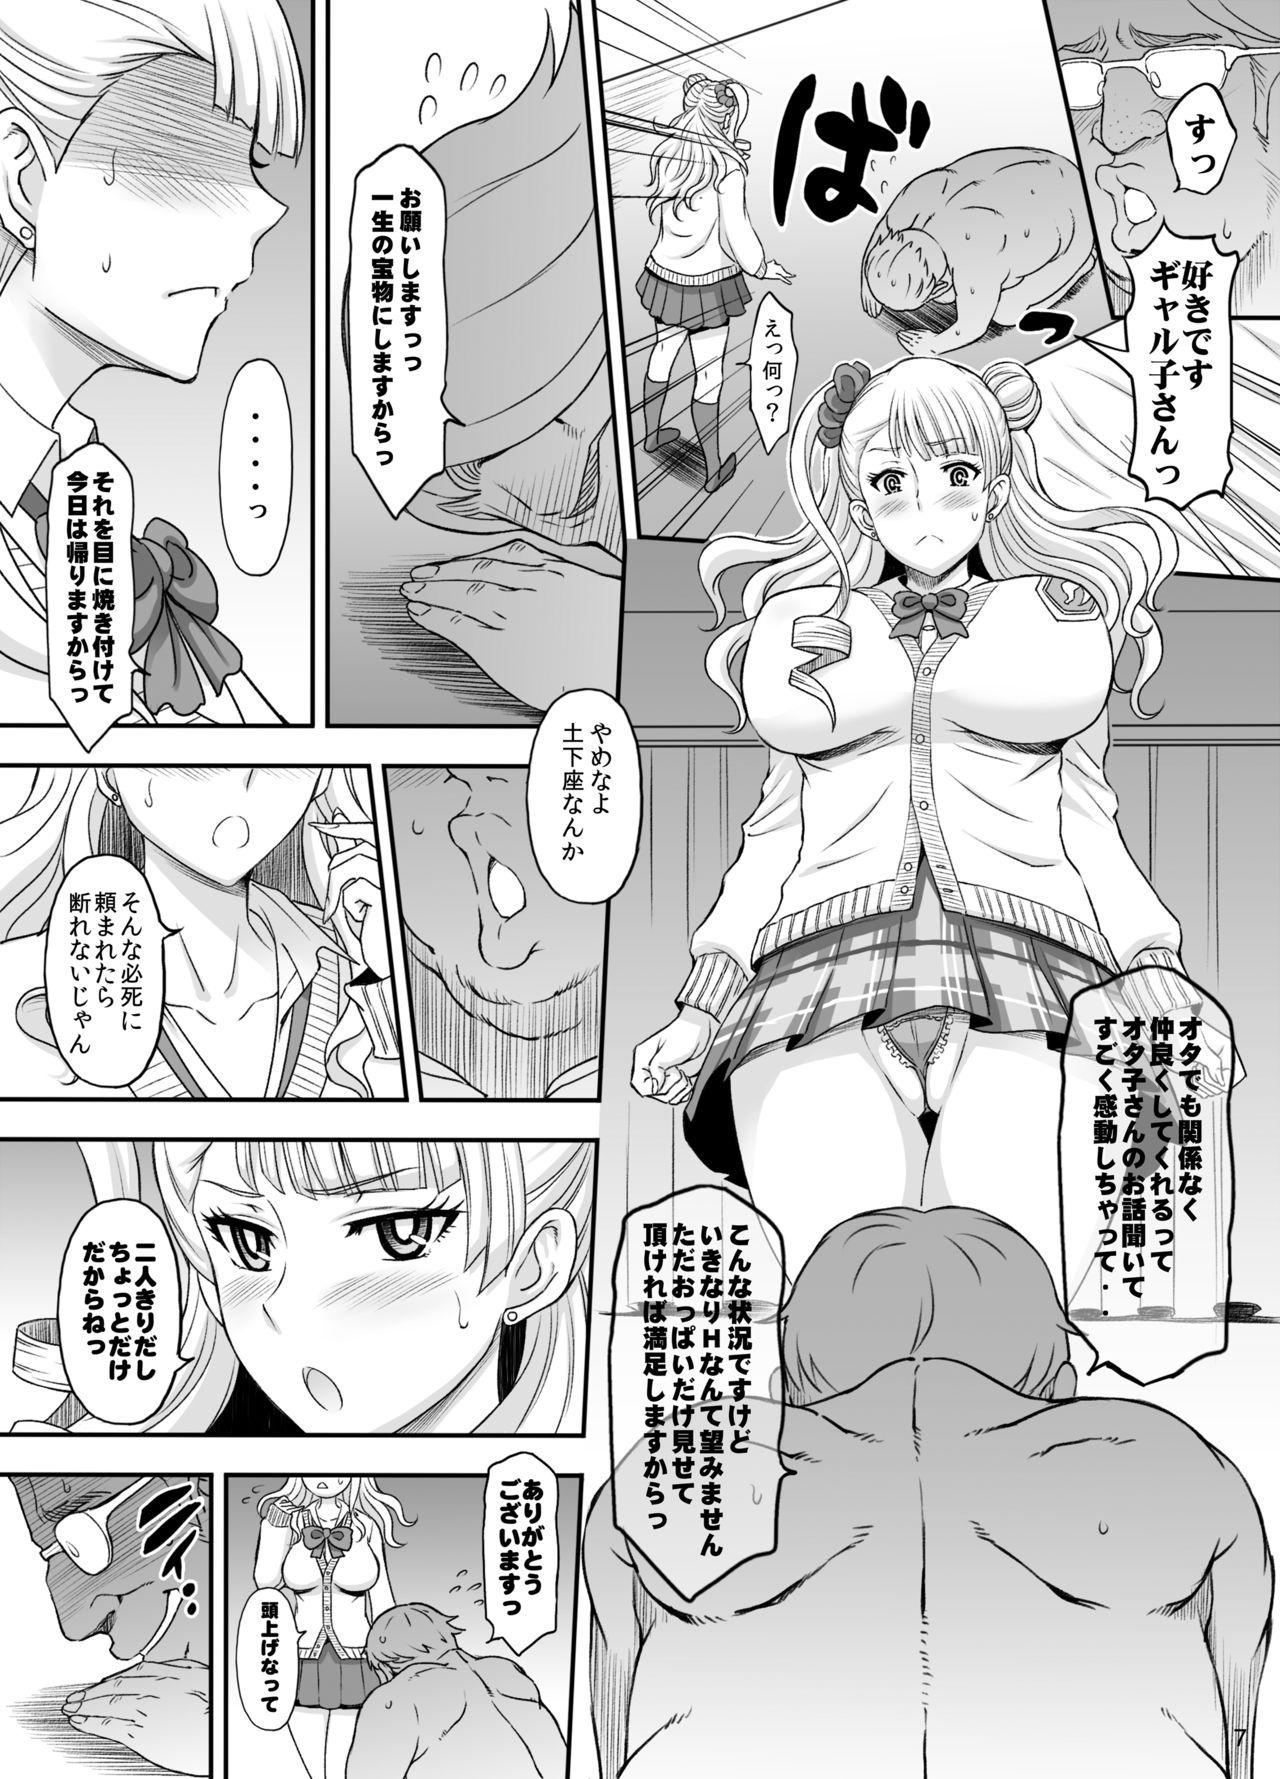 Sentones ○○○ shite! Galko-chan - Oshiete galko-chan Tiny - Page 6